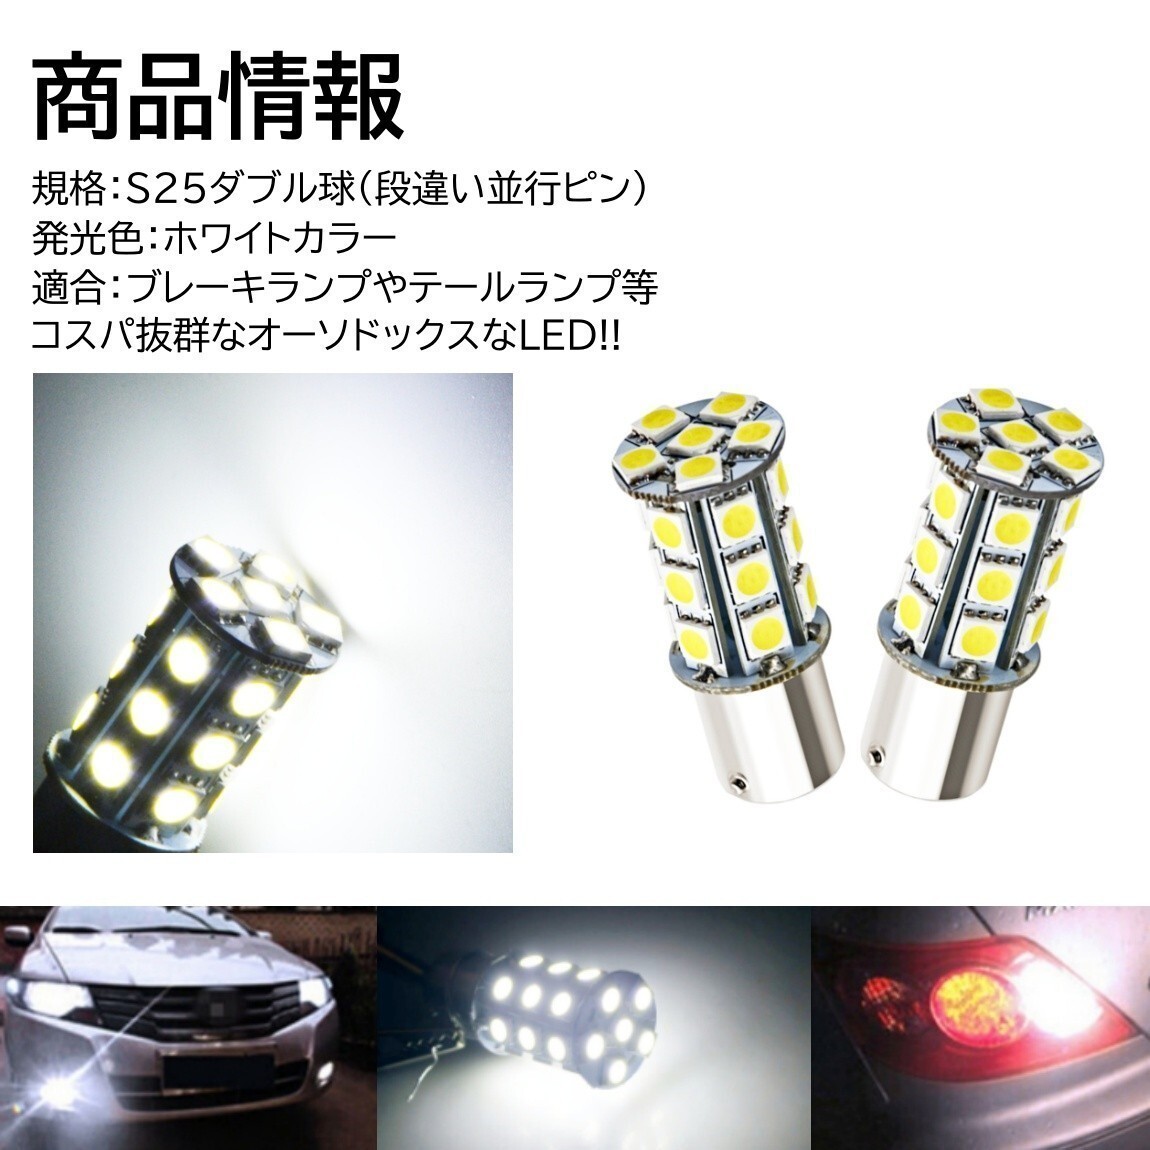 【送料無料】2個 爆光LED ホワイト S25 ダブル 27連 ストップランプ ブレーキランプ テールランプ 高輝度SMD 5050SMD_画像2